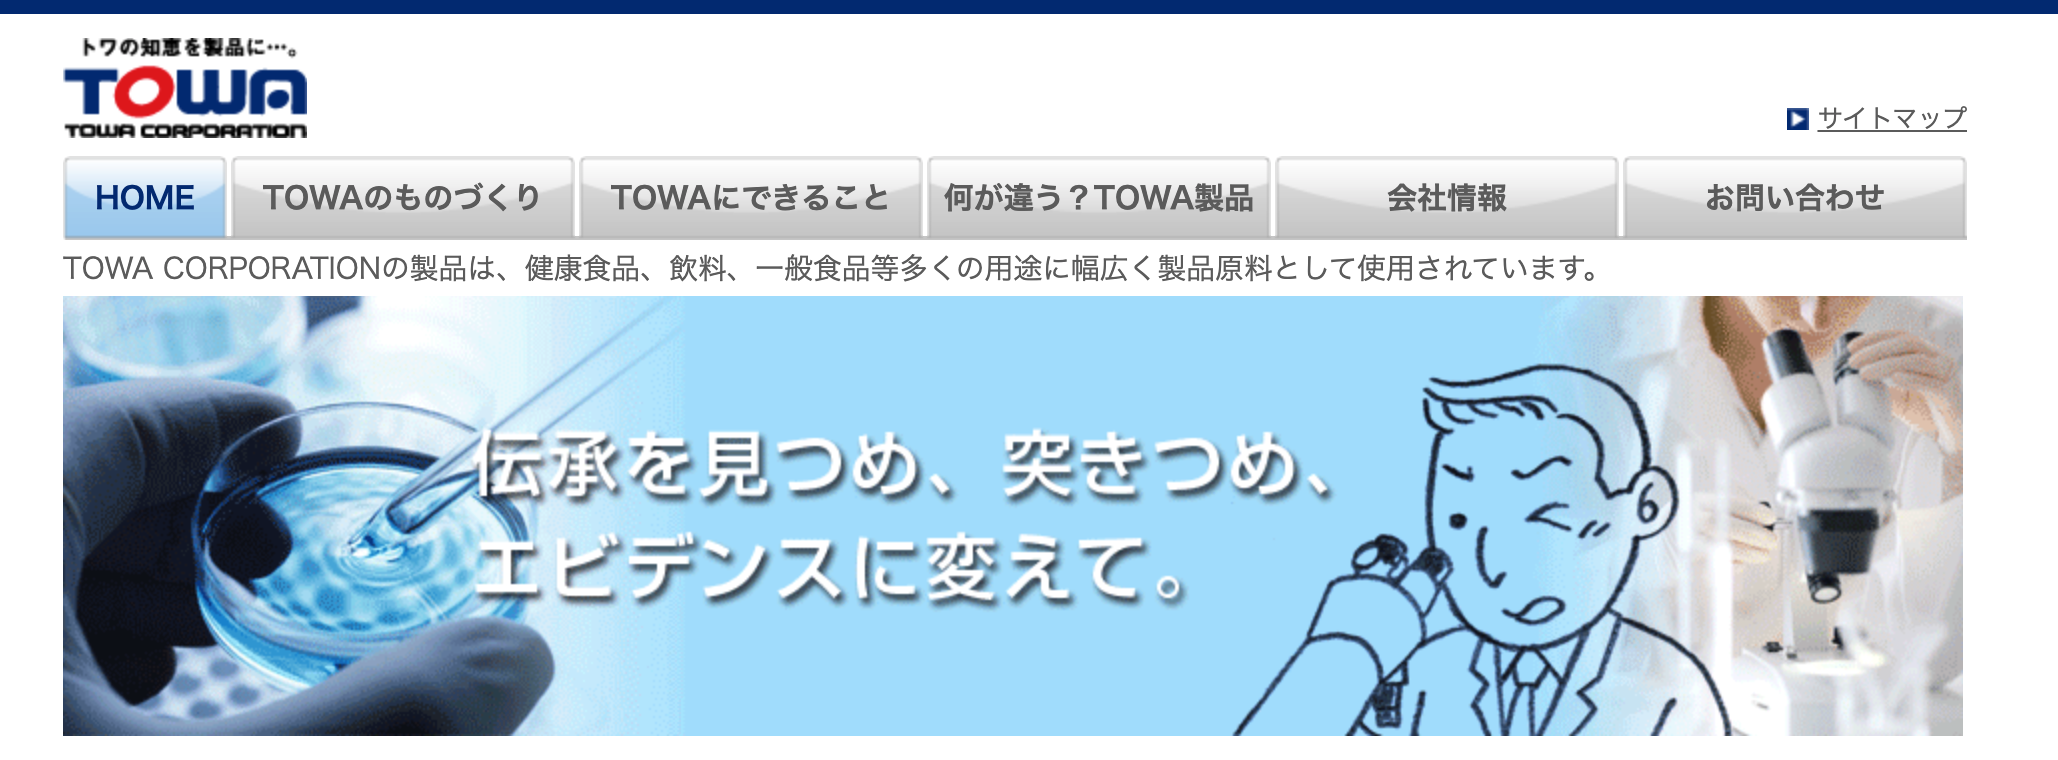 TOWA CORPORATION株式会社